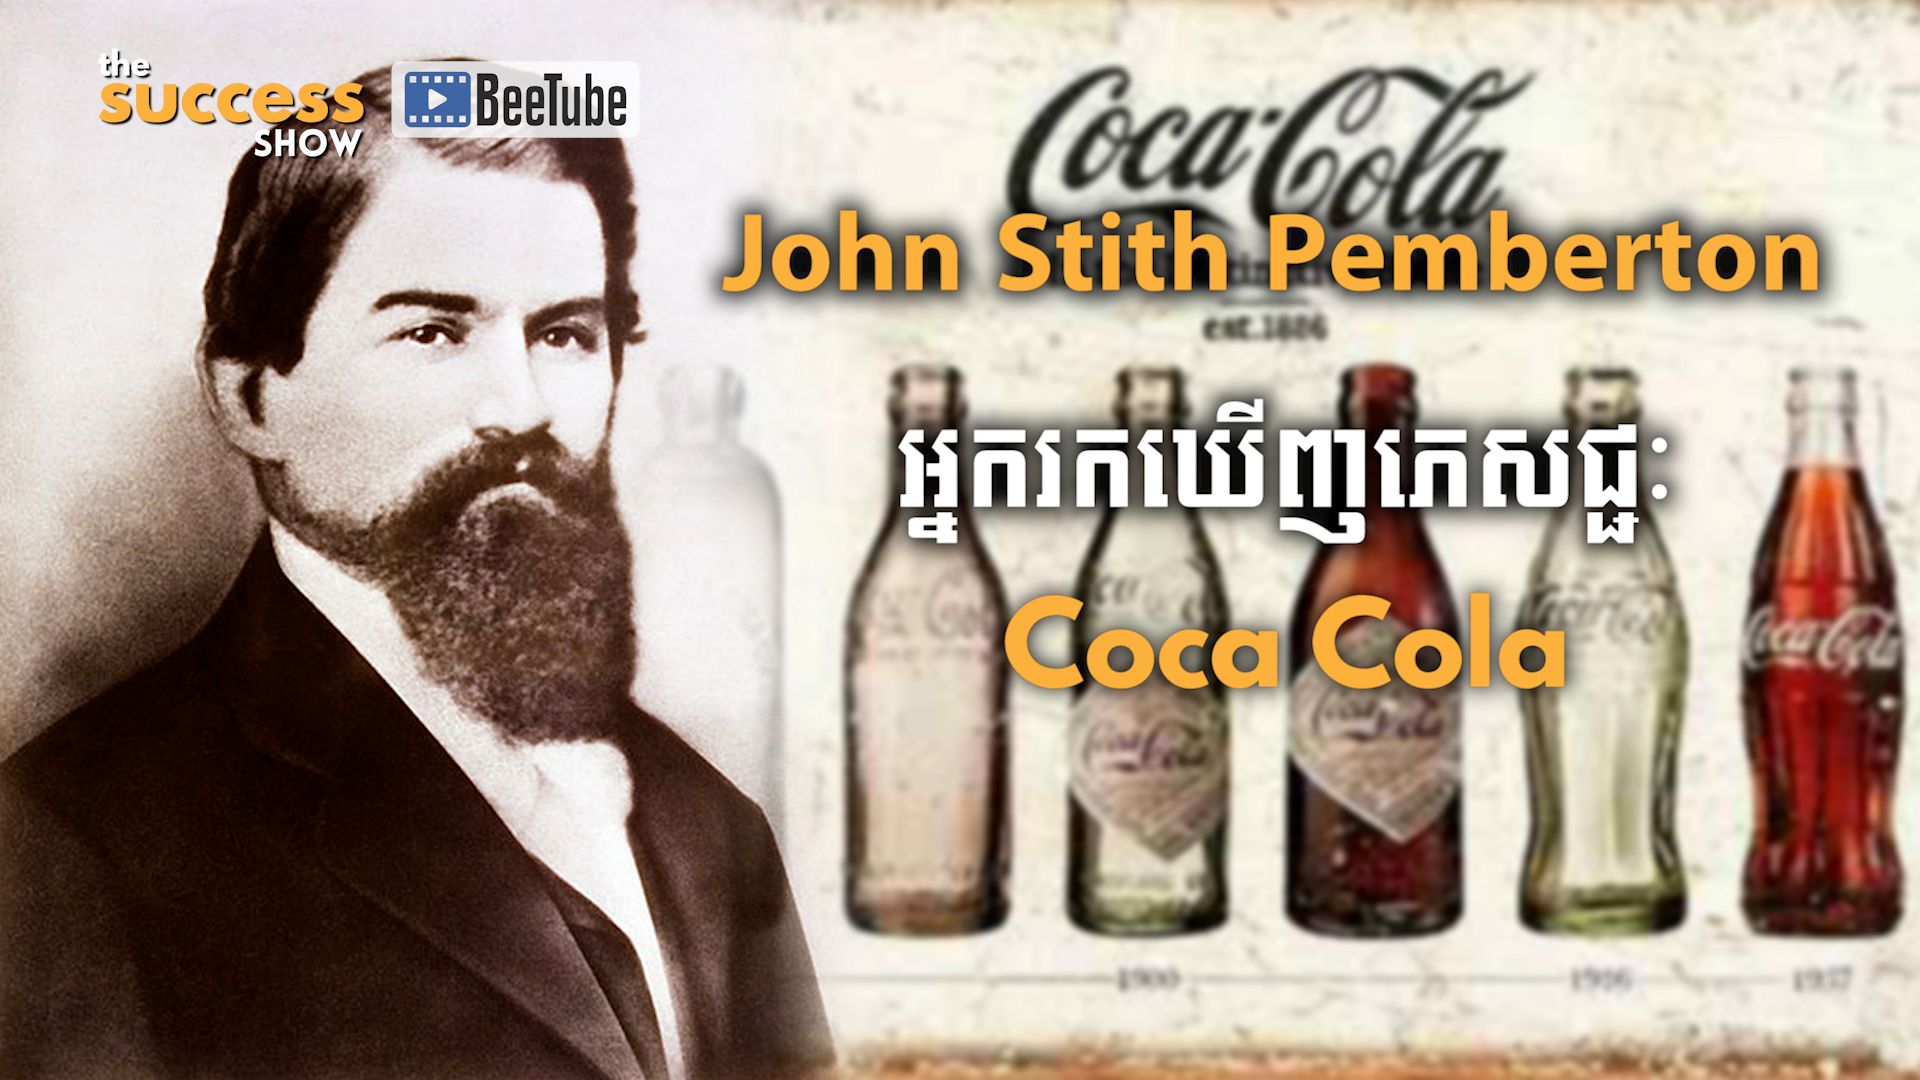 លោក John Stith Pemberton (ចន ស្ទីជ ផេមប៊រថុន) អ្នករកឃើញភេសជ្ជៈ Coca Cola ដំបូងគេបំផុត